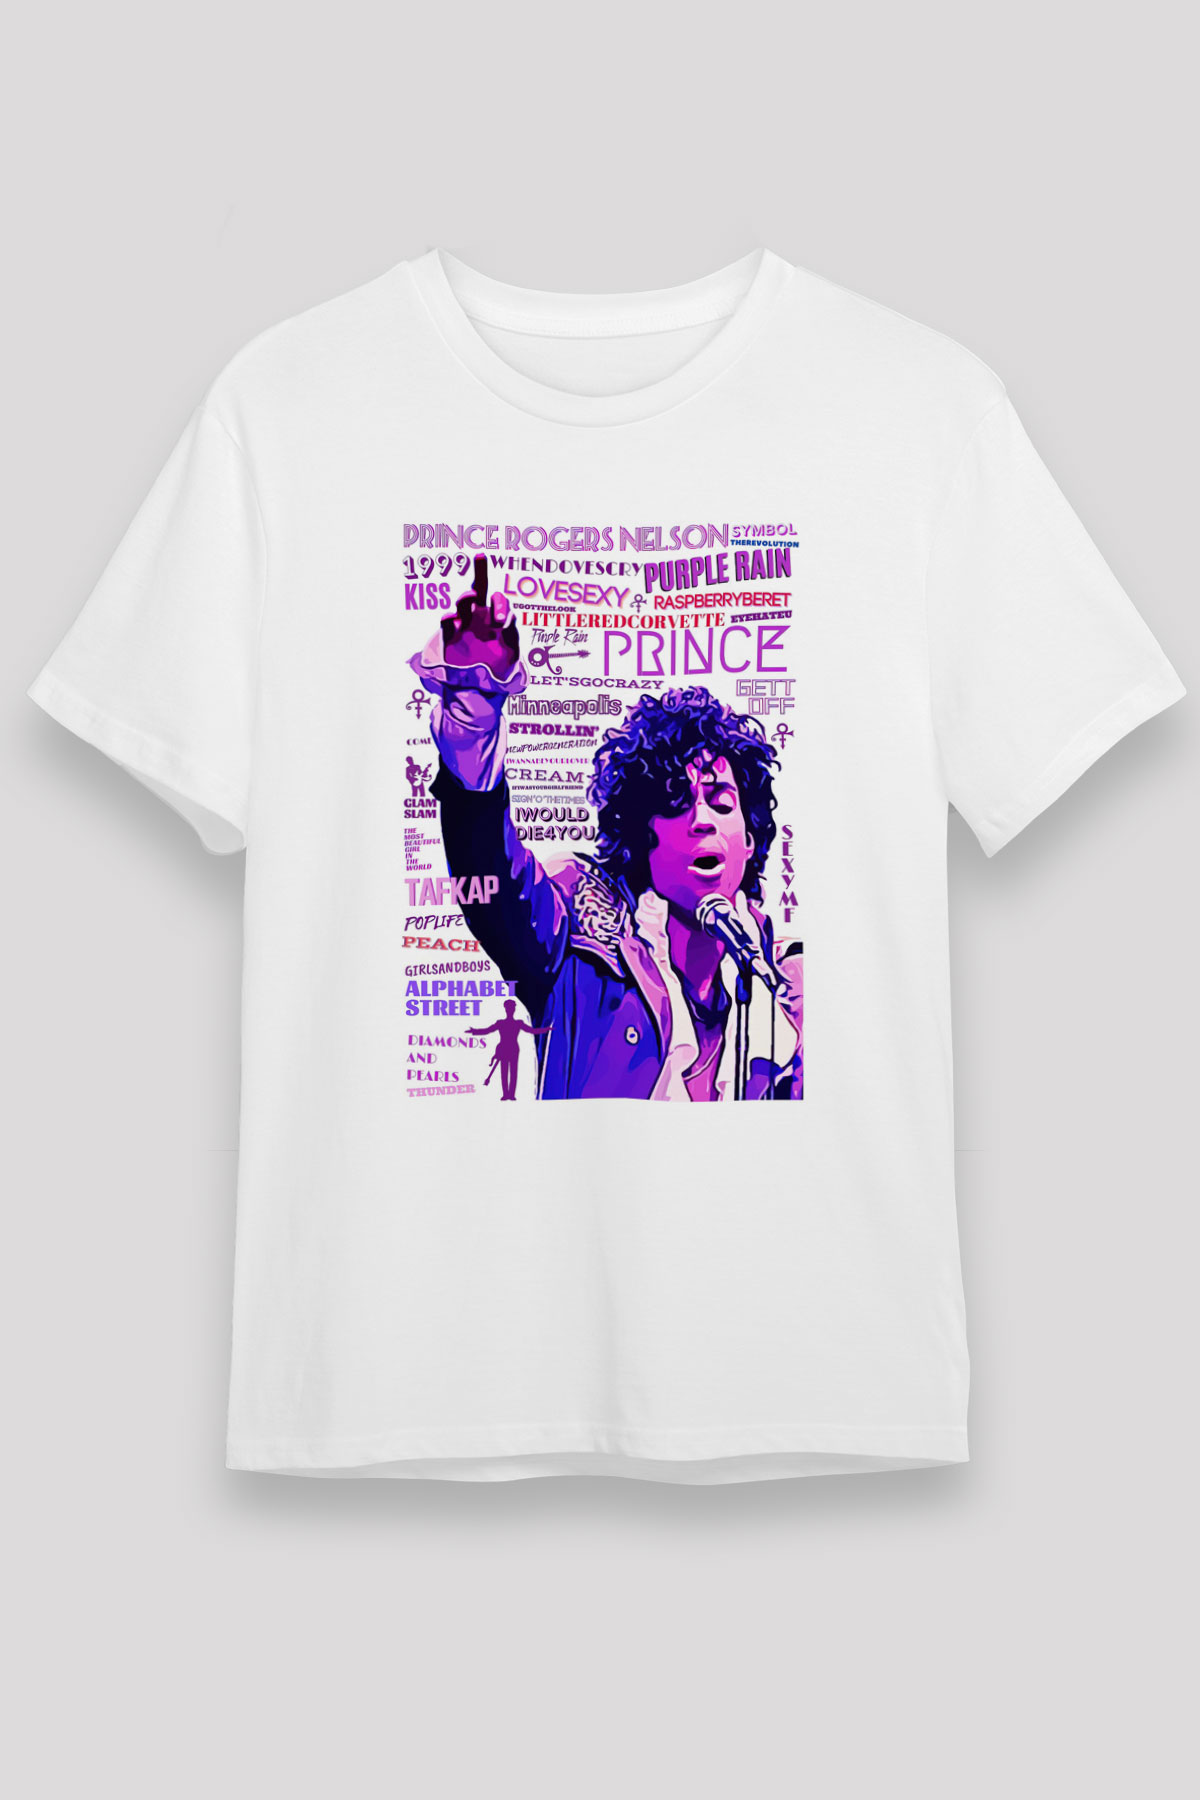 Prince T shirt,Music Band,Unisex Tshirt 05/